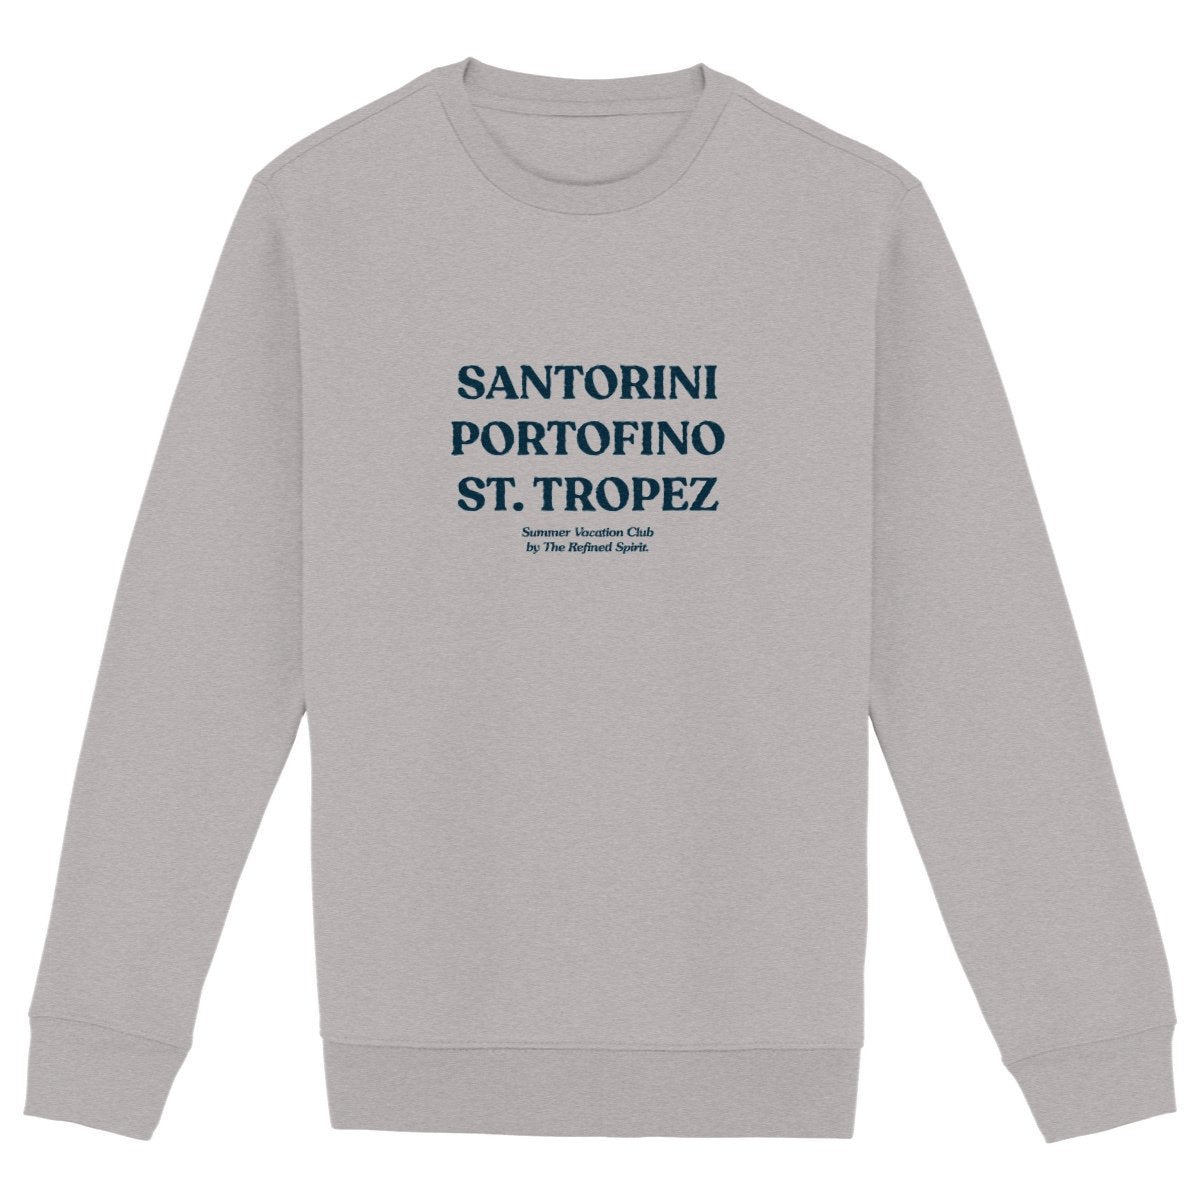 Santorini Portofino St. Tropez - Organic Sweatshirt